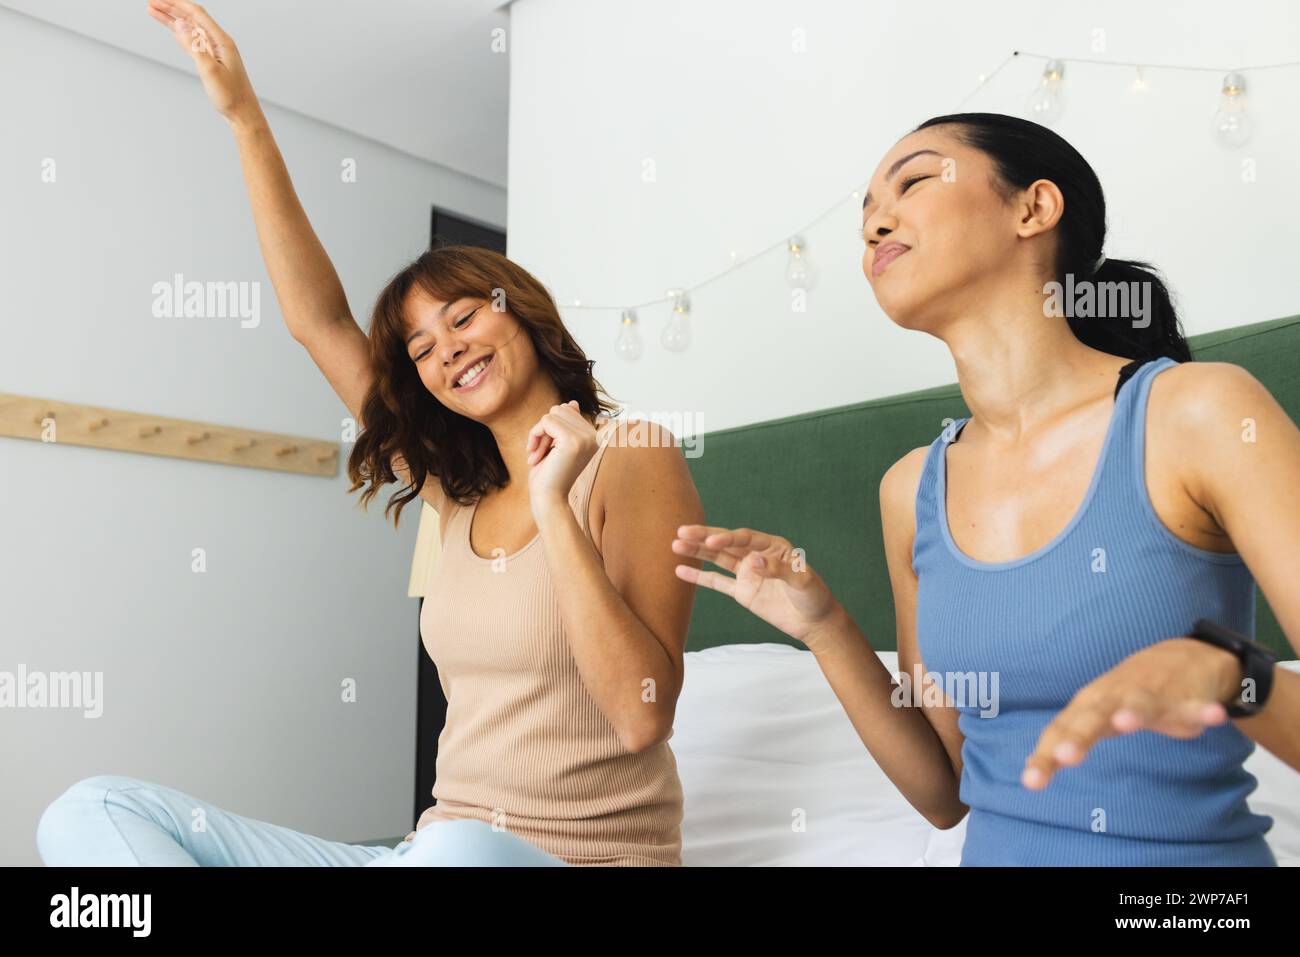 Deux jeunes amis biraciaux dansent joyeusement sur un lit à la maison Banque D'Images